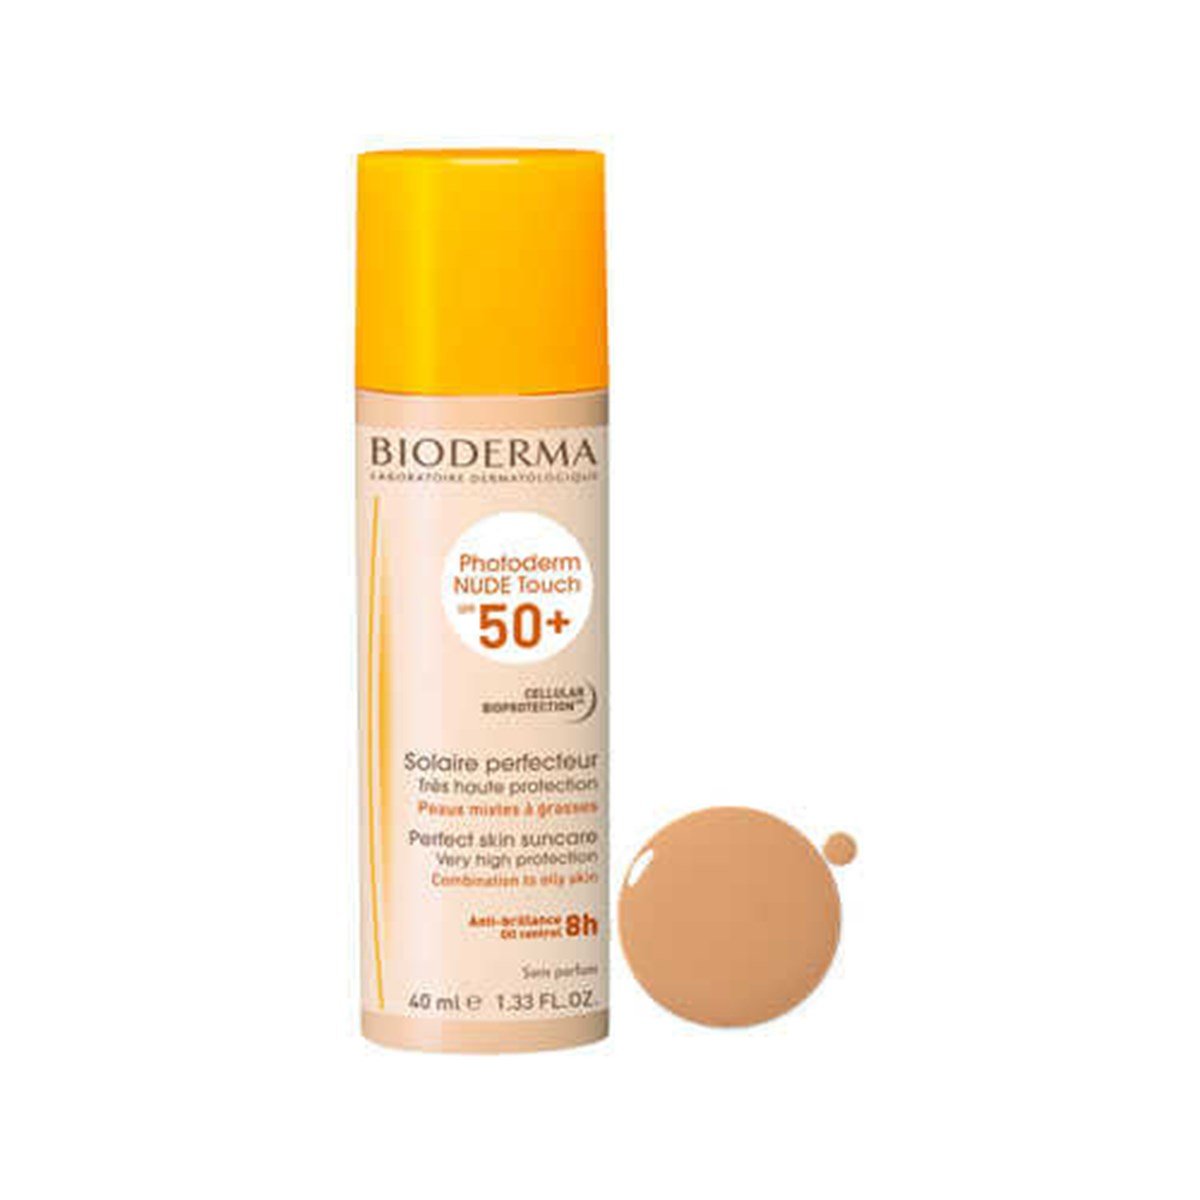 Bioderma Photoderm Nude Touch Golden Spf50+ Renkli Güneş Koruyucu 40ml  Fiyatları | Dermosiparis.com